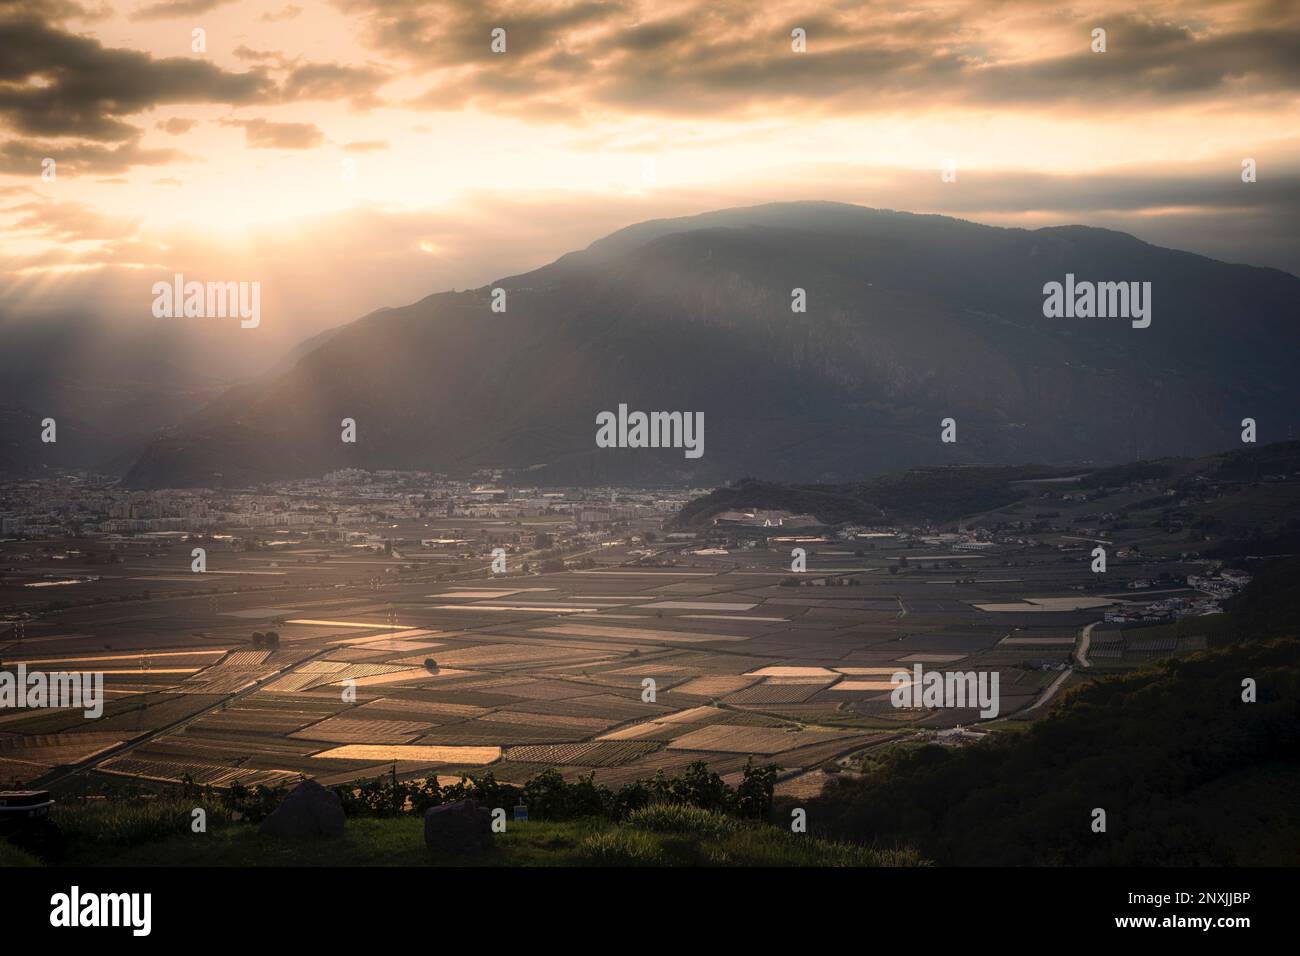 Landwirtschaftliche Felder füllen das Bergtal am Stadtrand von Bozen, Italien. Stockfoto